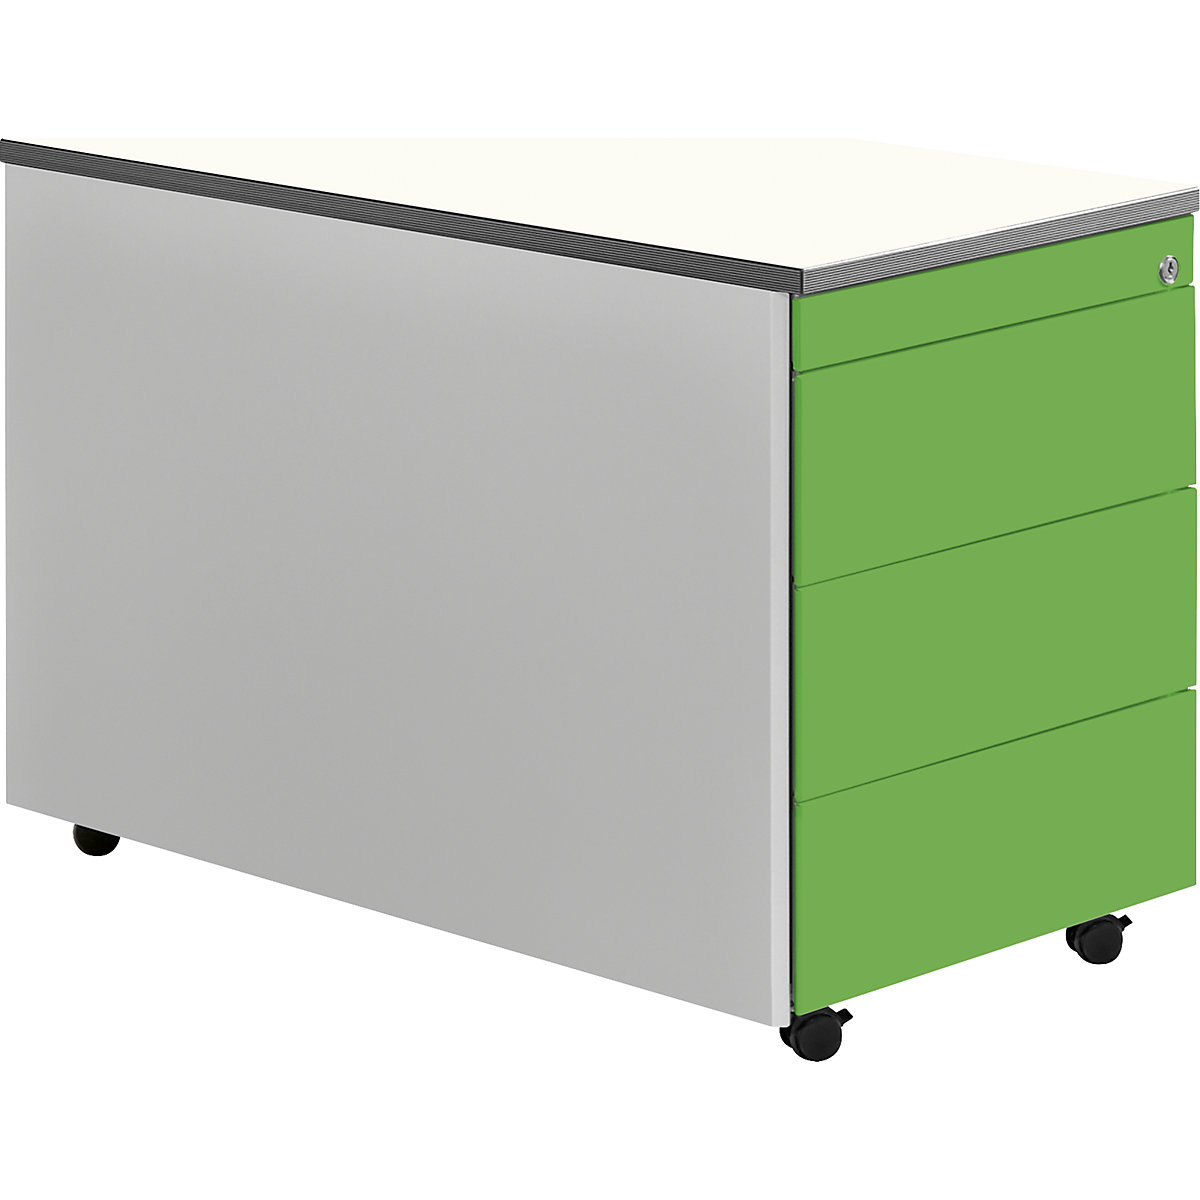 Casetieră cu sertare cu role – mauser, î. x ad. 579 x 800 mm, blat din plastic, 3 sertare, alb aluminiu / verde gălbui / alb